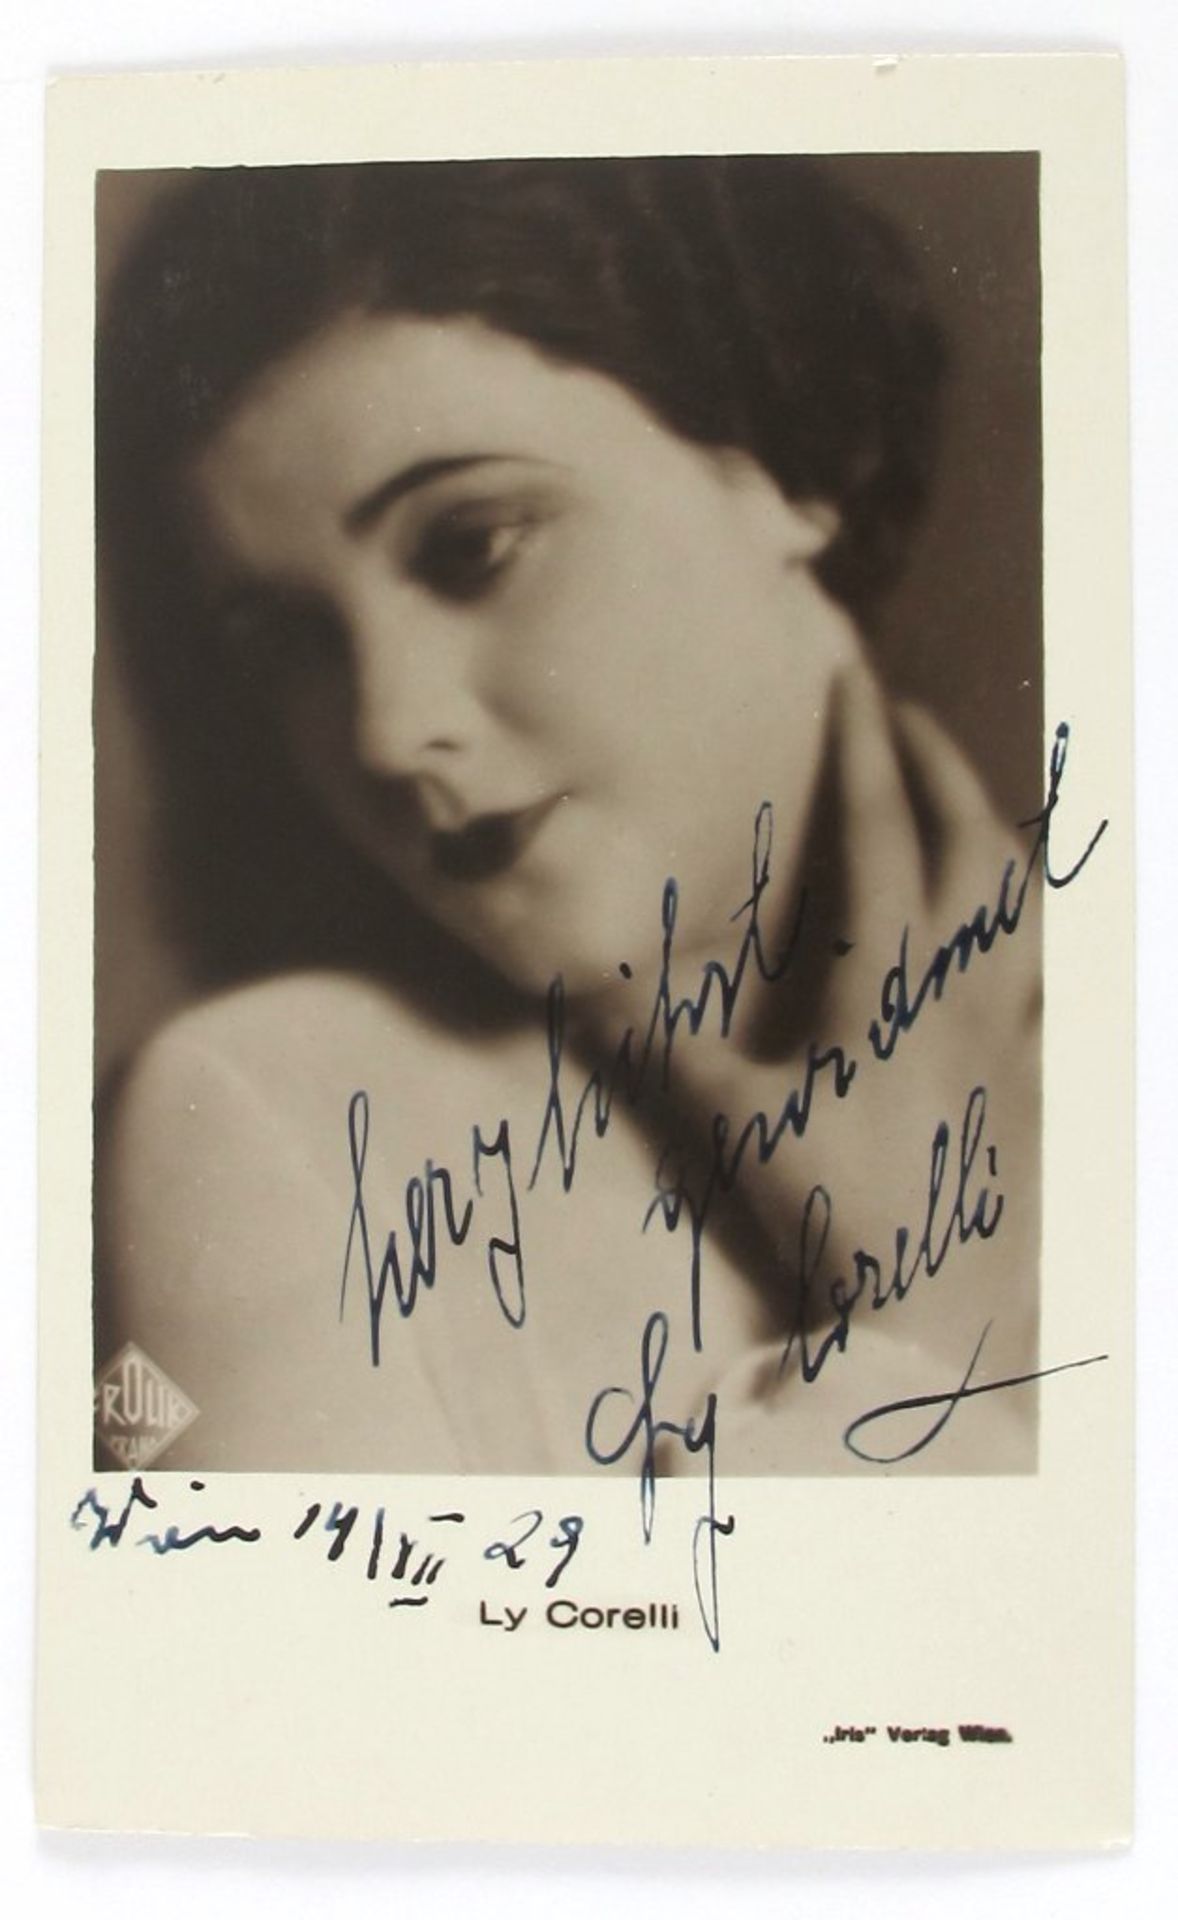 Autogramm-Postkarte Ly Corelli (Schauspielerin, geb. 1909)- - -27.00 % buyer's premium on the hammer